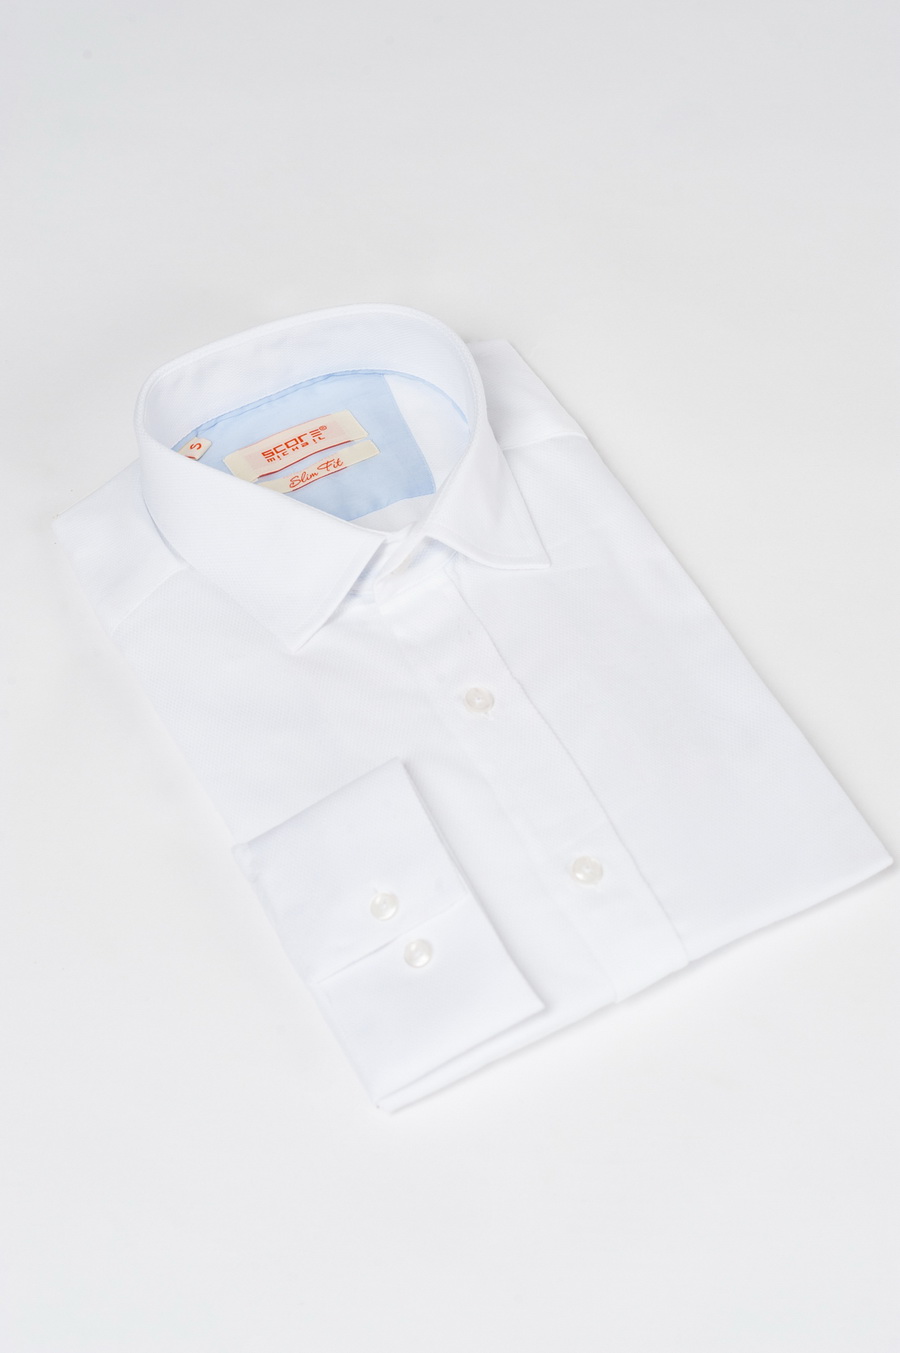 Приталенная рубашка белого цвета. Арт.:5-523-3